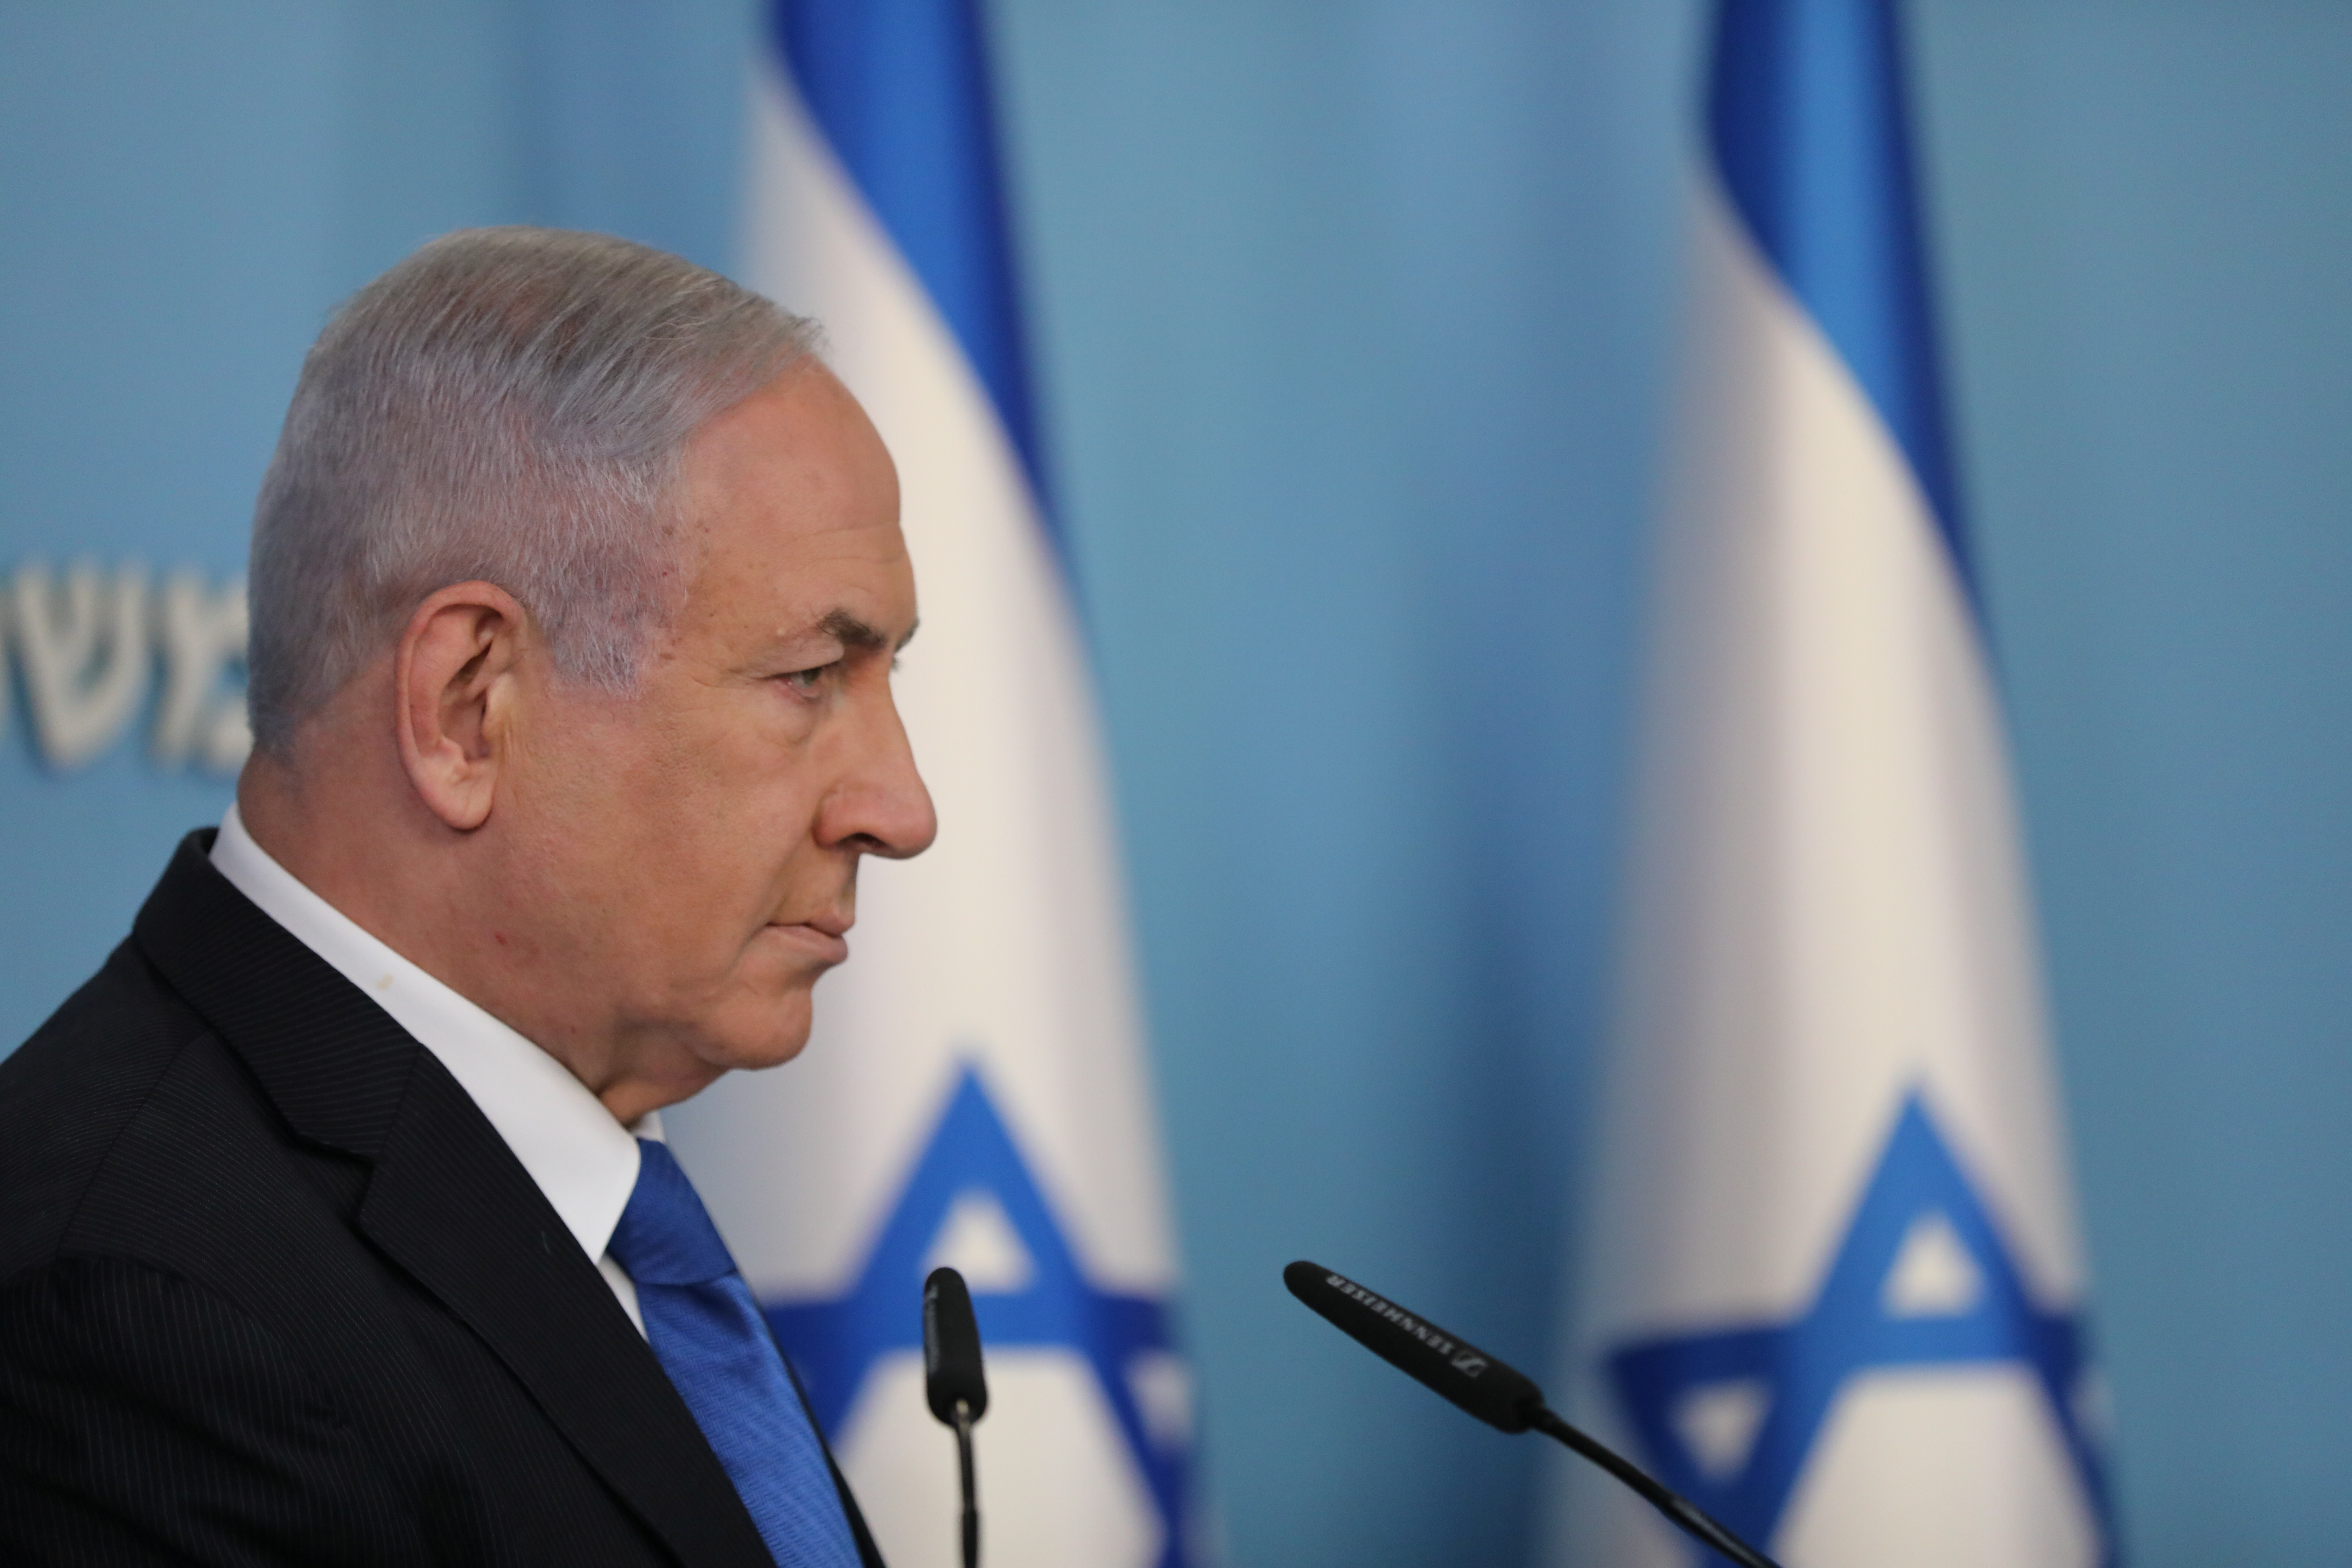 El primer ministro israelí expresó en conferencia de prensa su satisfacción por el acuerdo alcanzado con Emiratos Árabes Unidos y mediante la mediación de Estados Unidos (Abir Sultan /Pool via REUTERS)